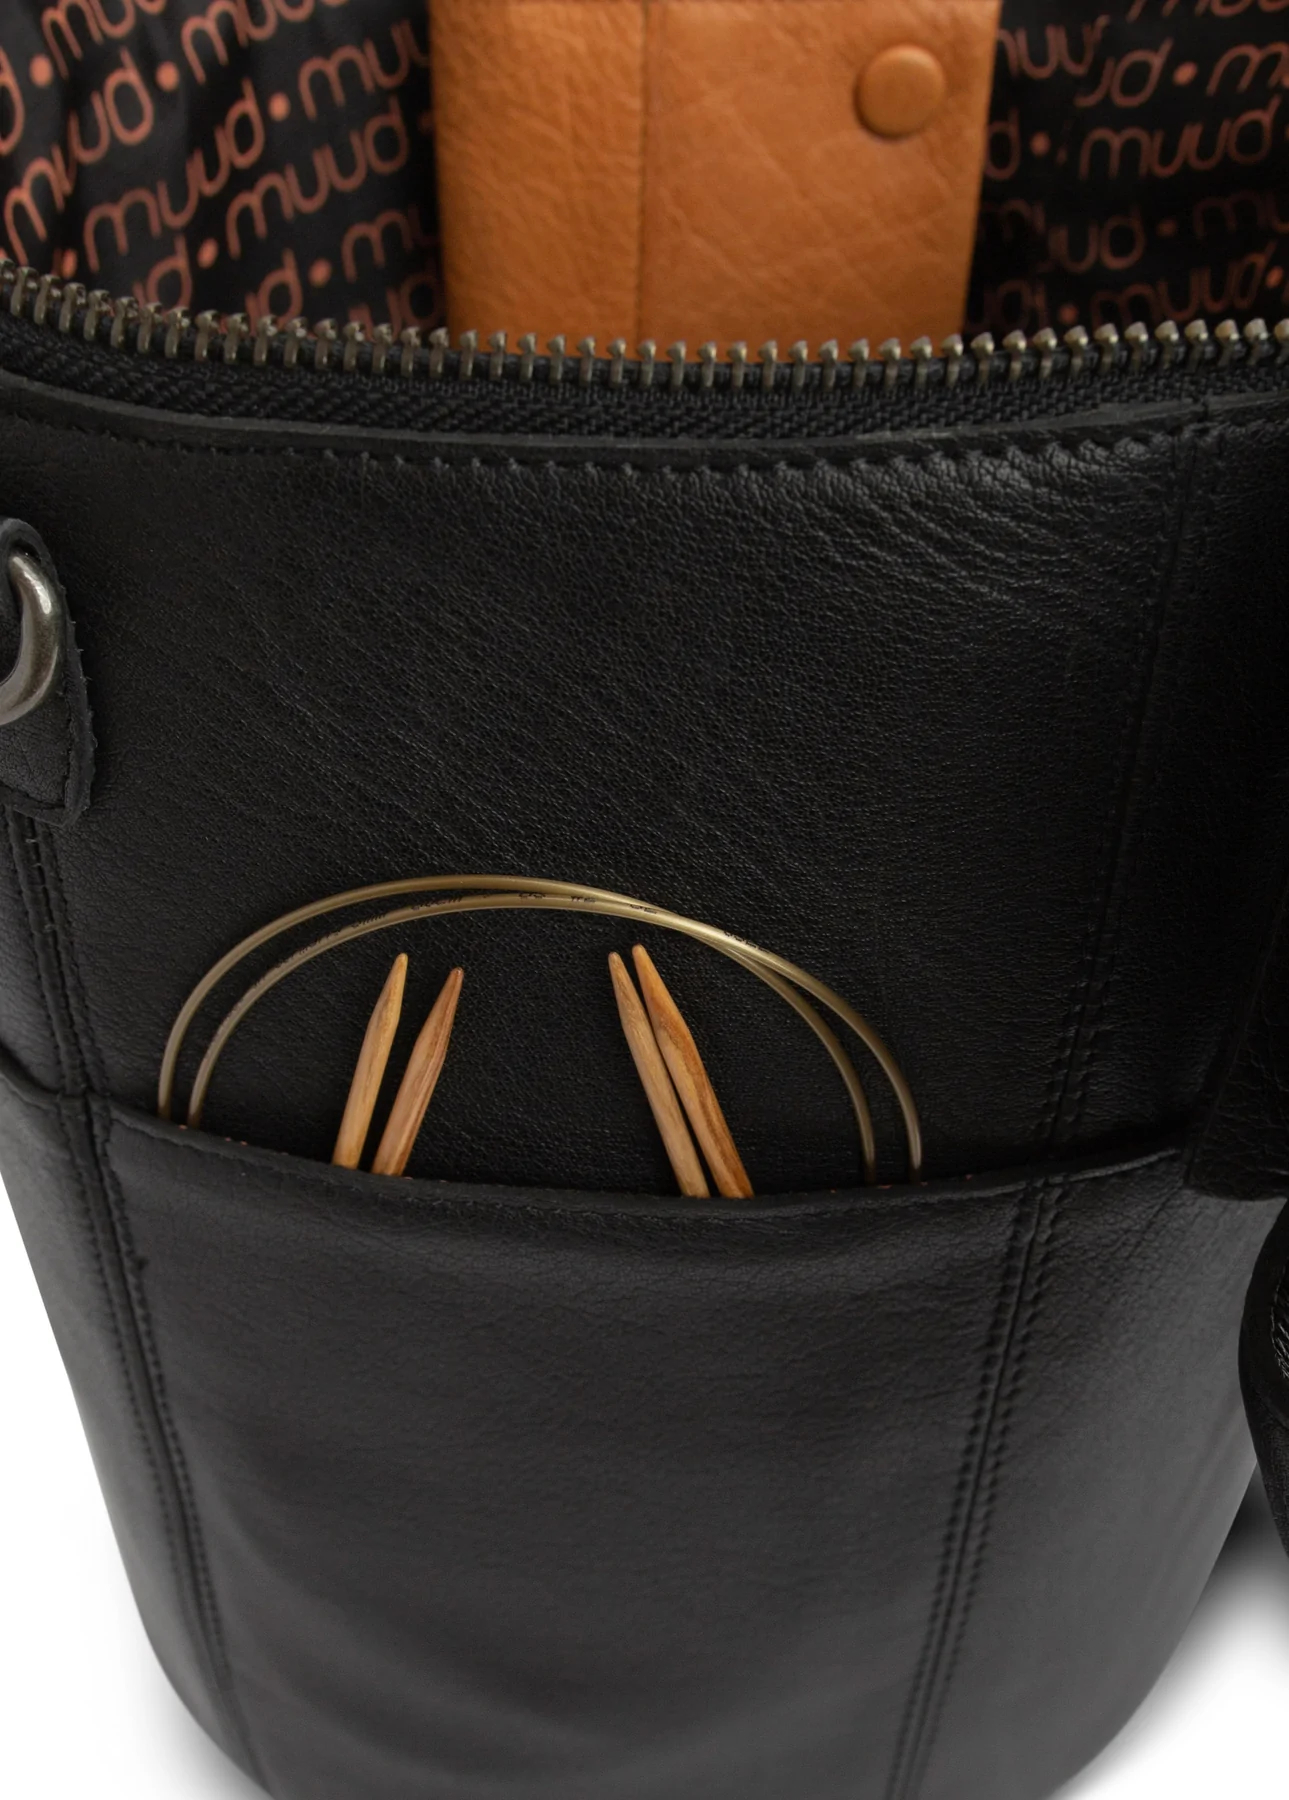 Saturn XL - Ledertasche / Stricktasche / Kulturbeutel / Scherentasche, handgefertigt aus Echtleder von muud black